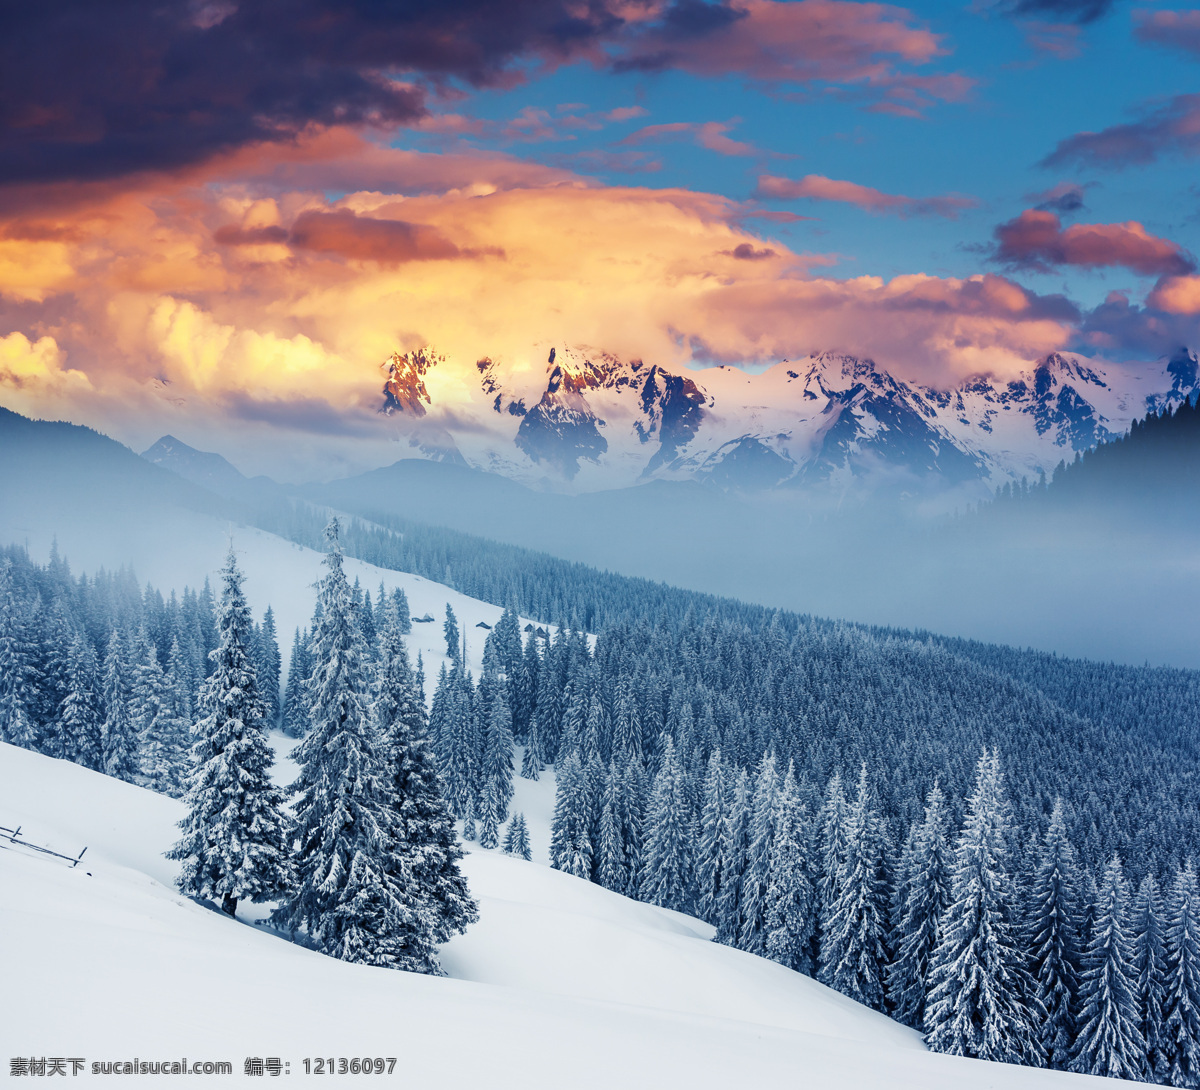 美丽 雪山 风景 树木 山峰 冬季美景 美丽风景 漂亮景色 风景摄影 雪地风景 自然风景 山水风景 风景图片